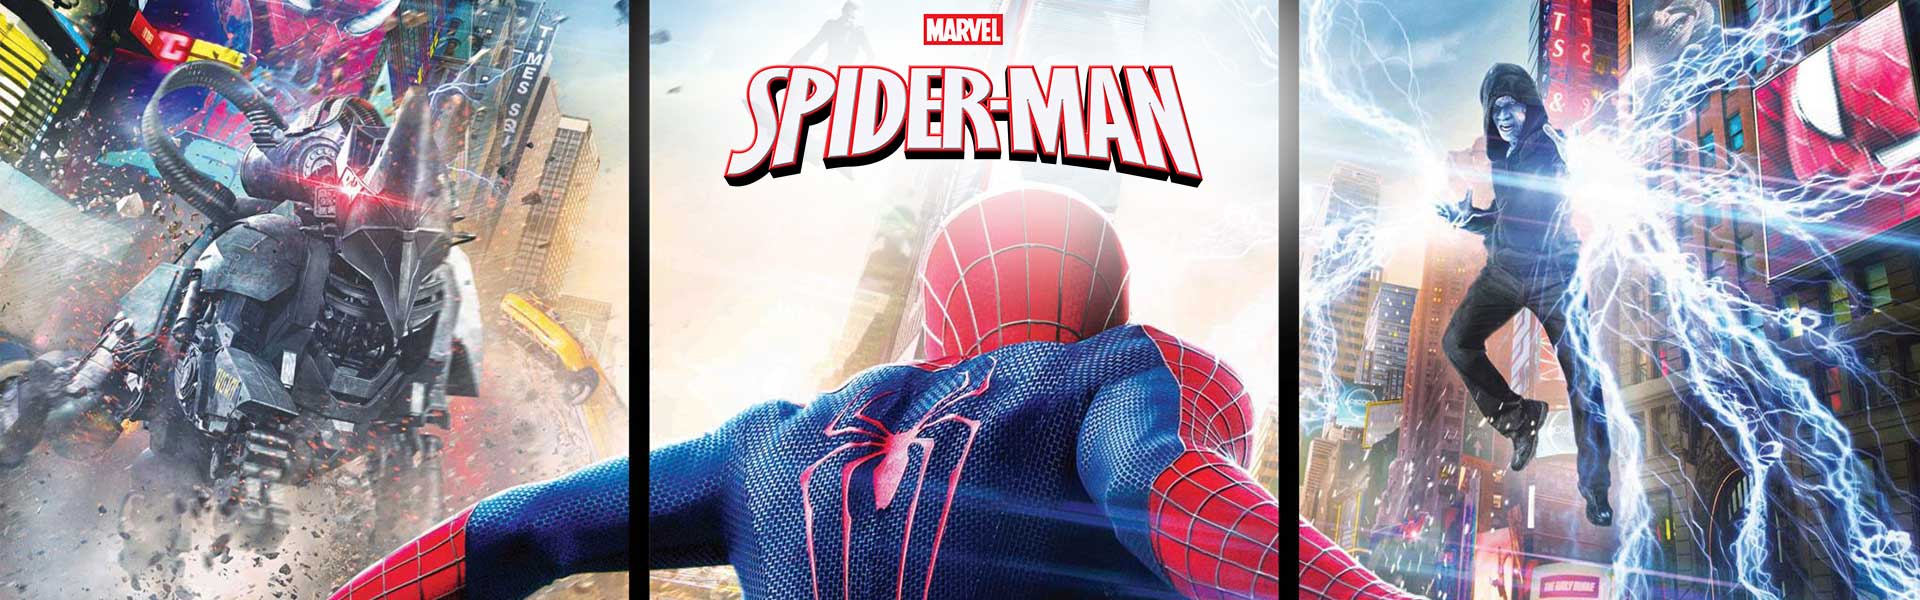 TREFL SPIDER-MAN Palapeli Hämähäkkimies, 60 palaa Spiderman